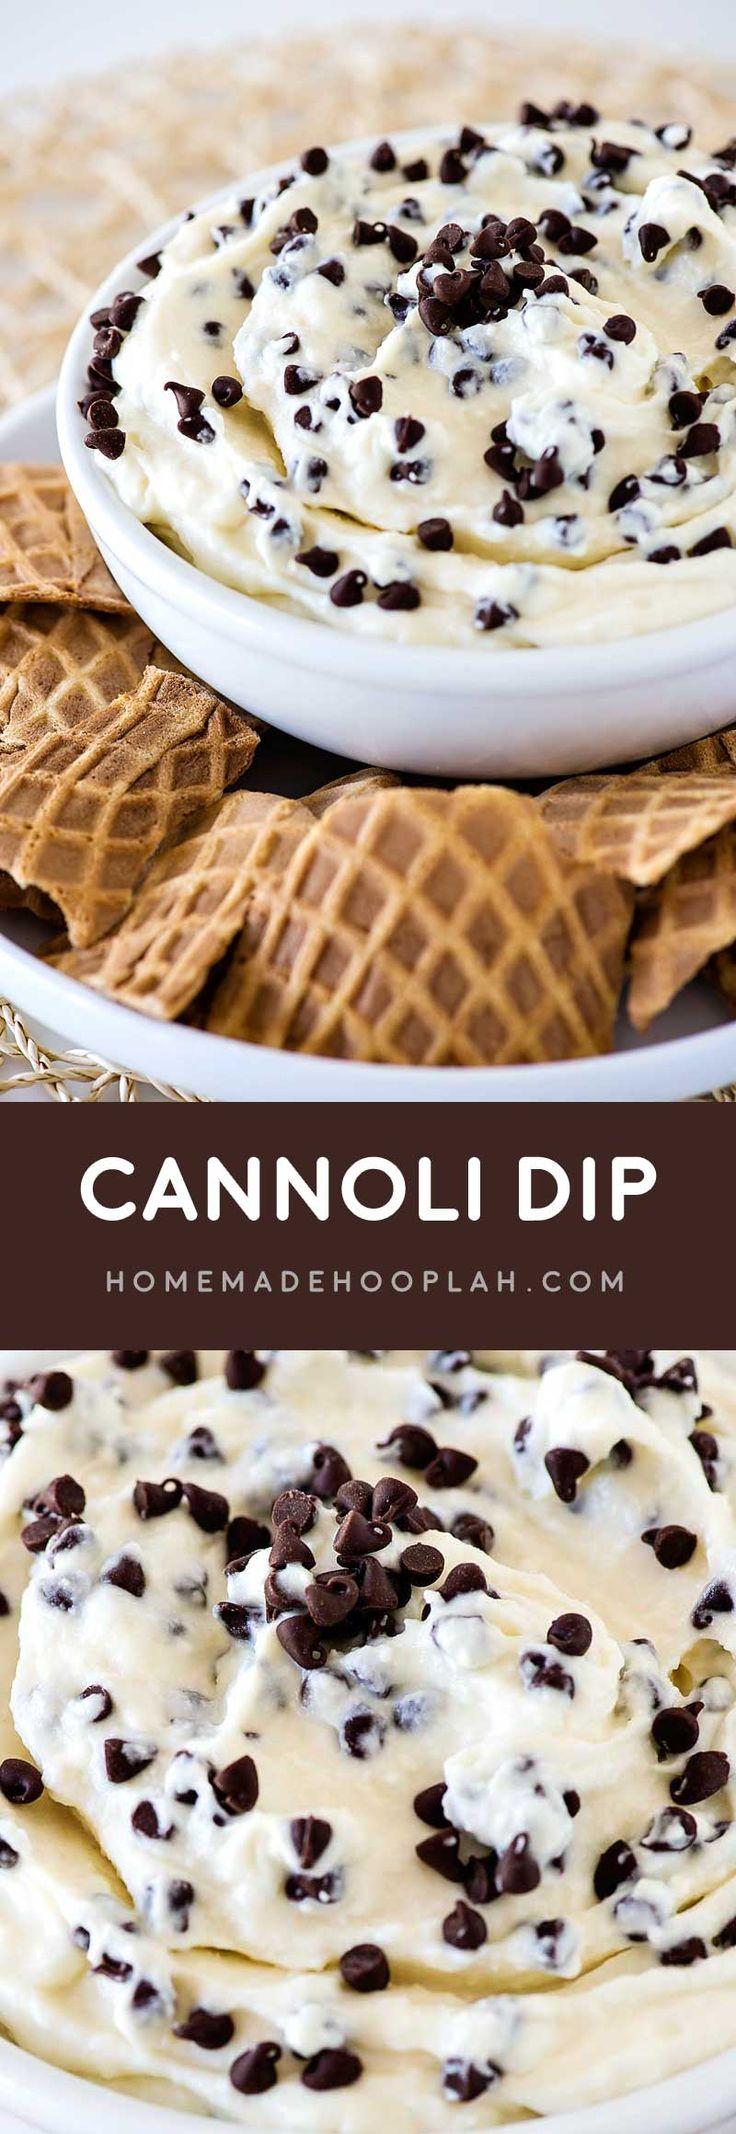 Wedding - Cannoli Dip